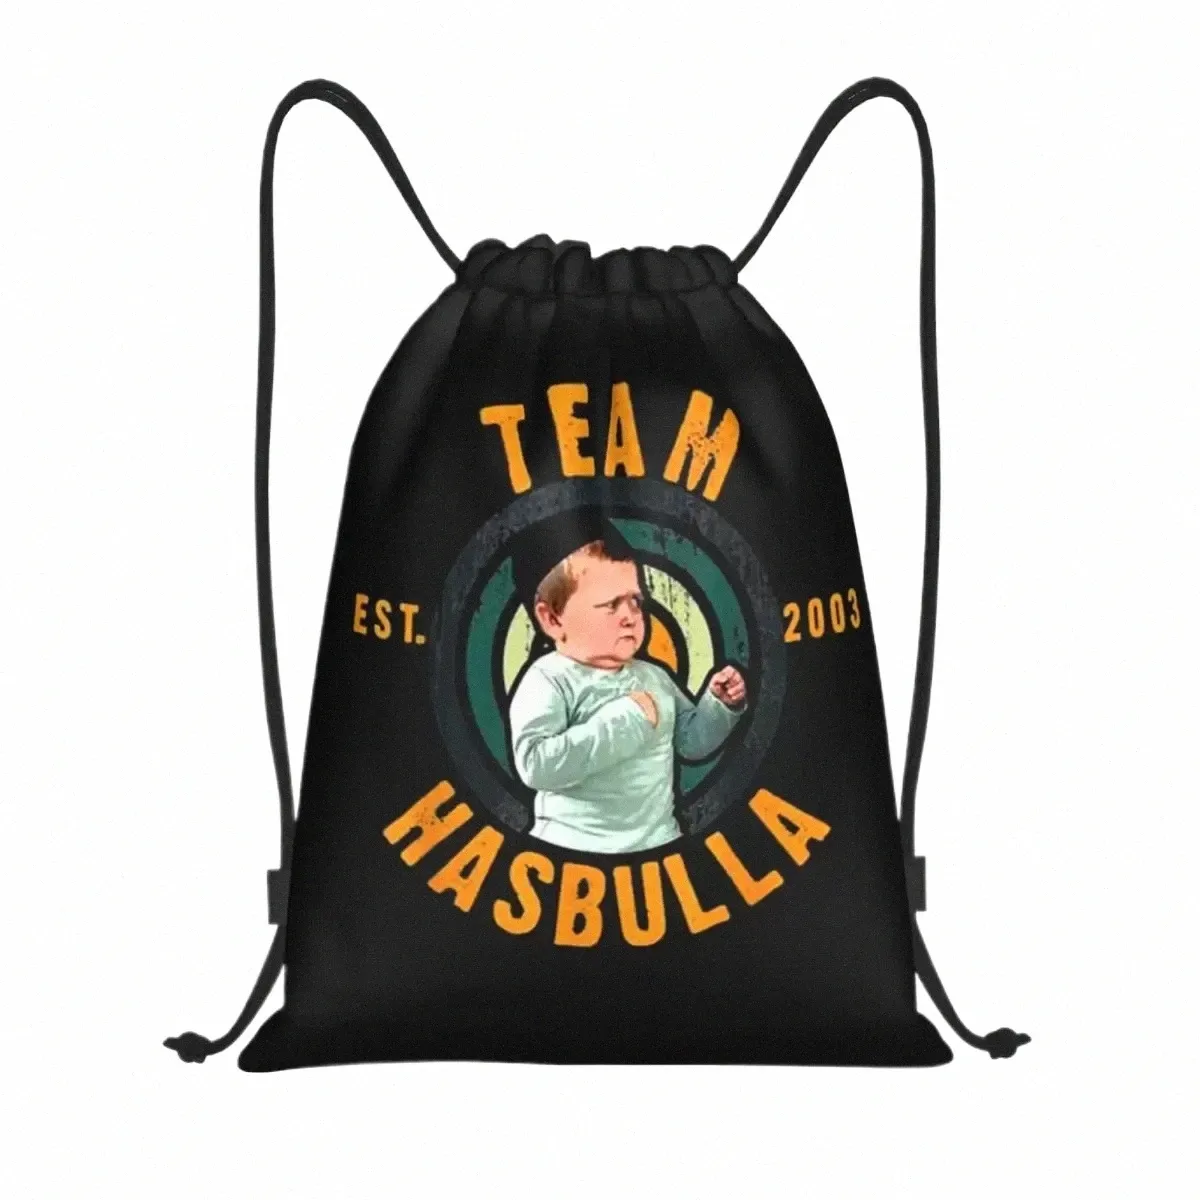 Équipe Hasbulla Hasbullah Fight Meme Sac à dos à cordon Femmes Hommes Sport Gym Sackpack Pliable Shop Bag Sack D48l #